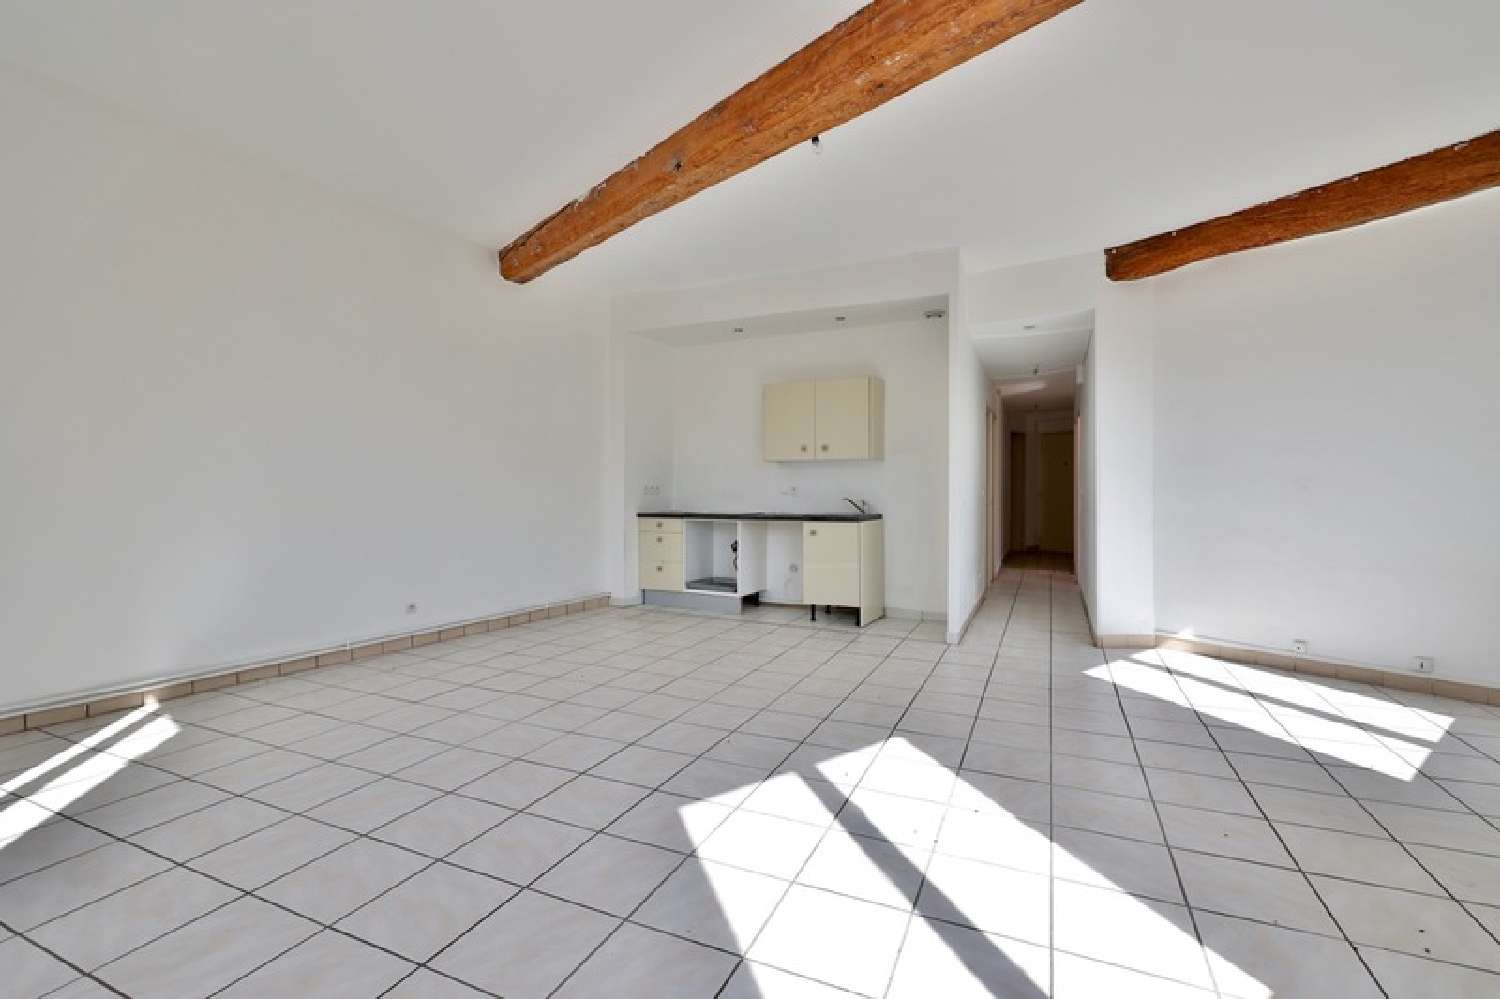  for sale apartment Pontcharra-sur-Turdine Rhône 3